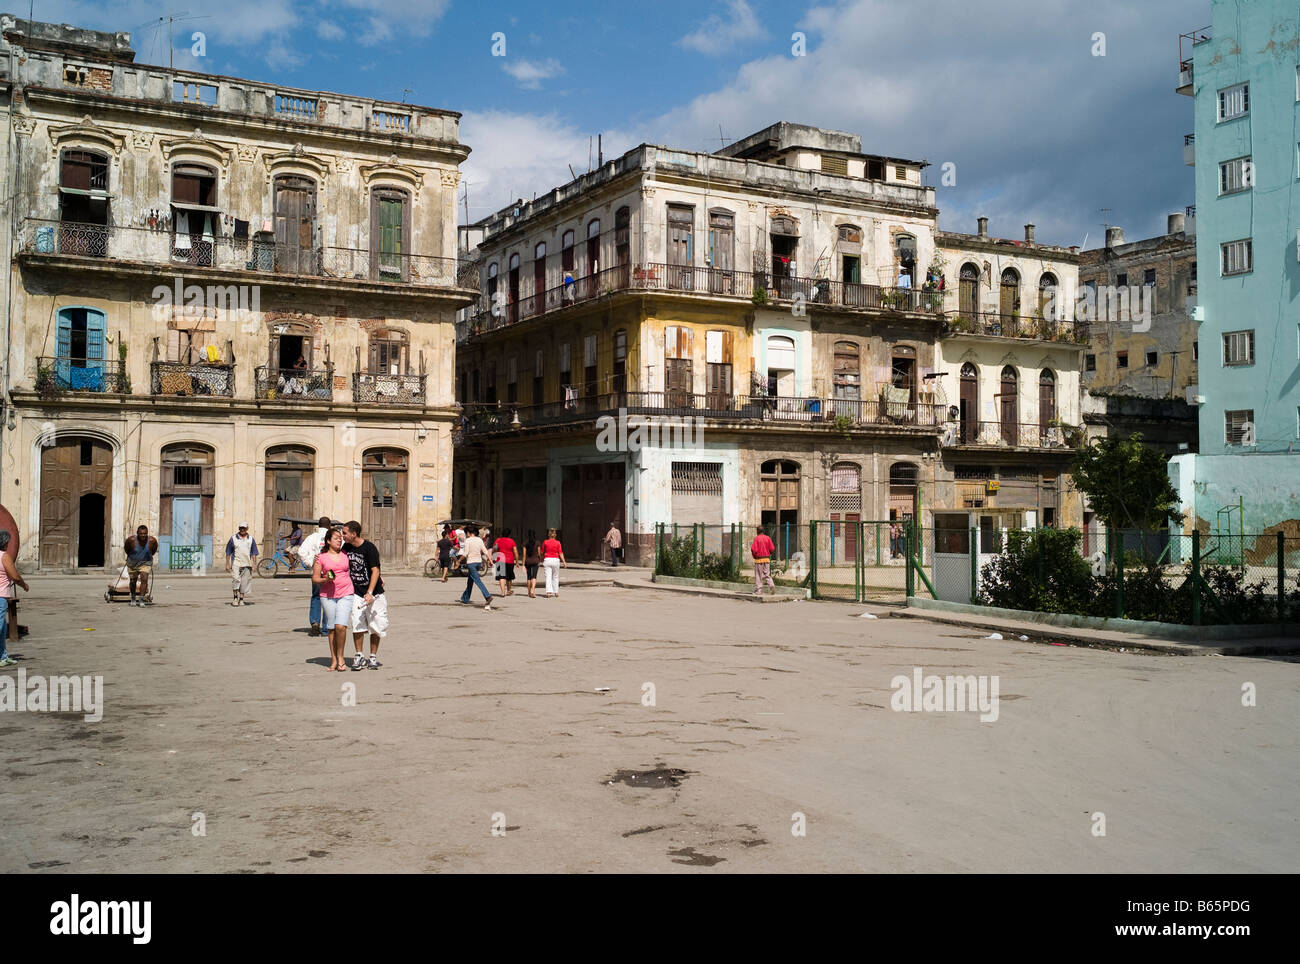 Sunday morning scene at Plaza del Cristo, Havana. Stock Photo